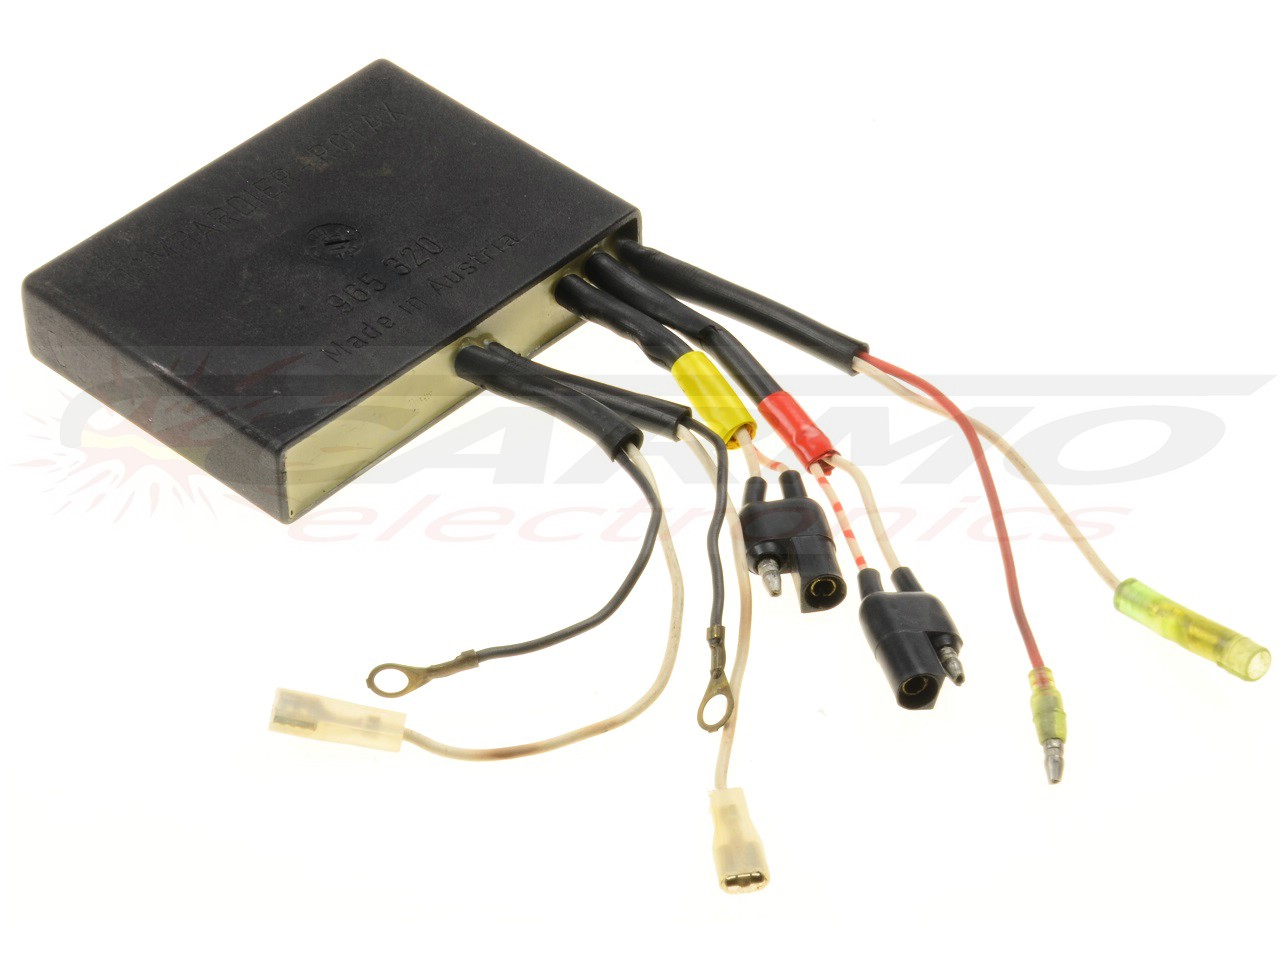 Rotax 912A 912UL electronic box SMD module ignição módulo de ignição CDI Box bombardier (965-320, 912 060 PKT)